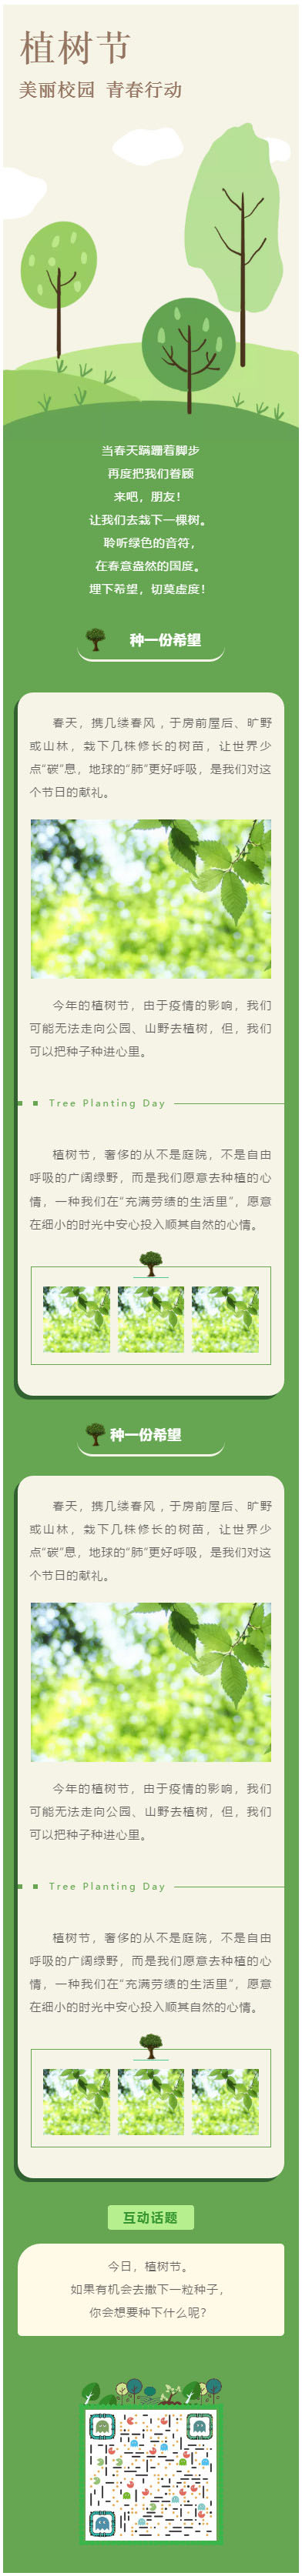 微信植树节模板公众号推送图文推文模板绿色风格